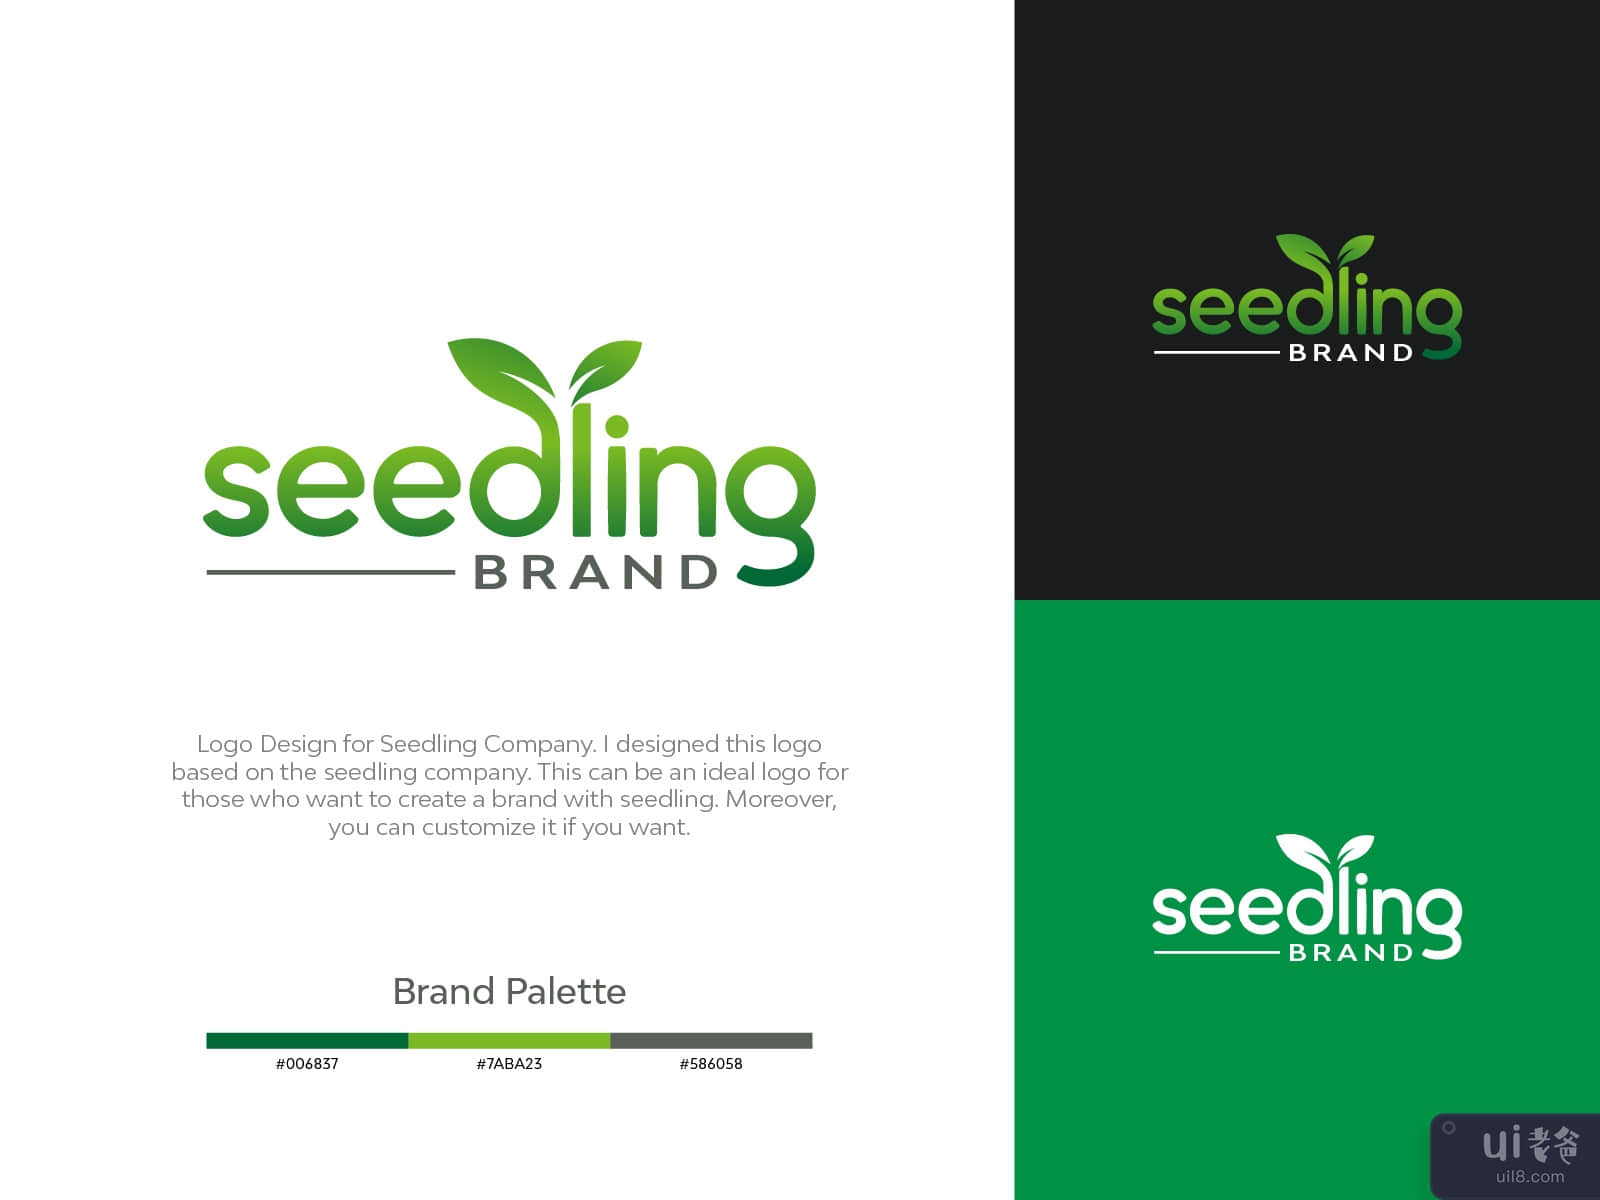 苗木品牌标志概念(Seedling Brand Logo Concept)插图